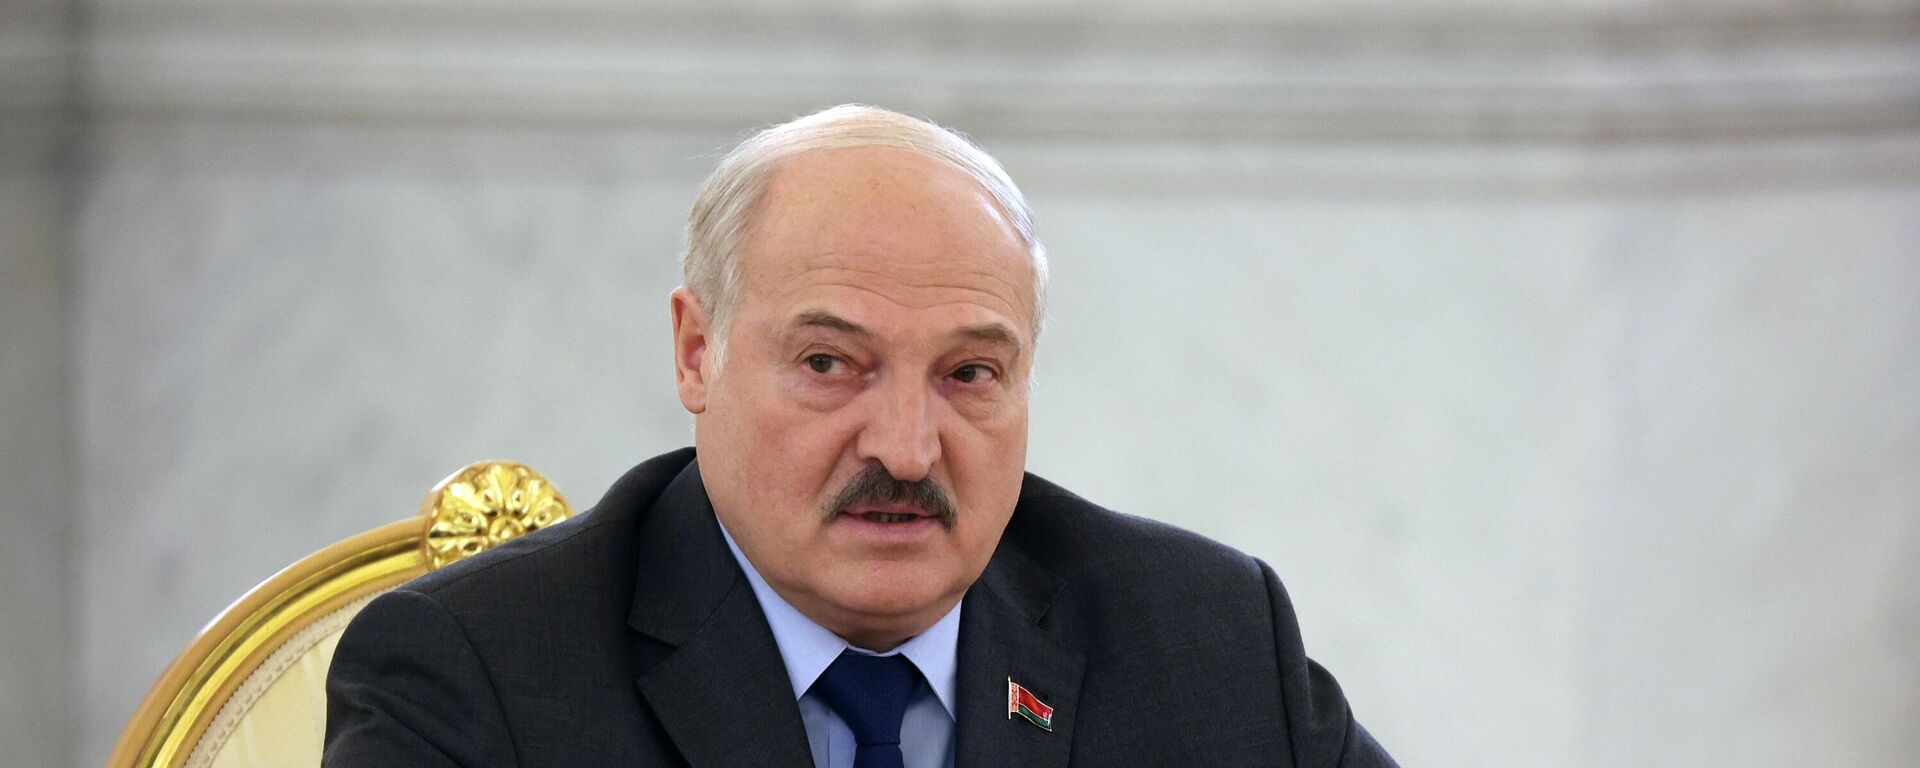 Alexandr Lukashko, el presidente de Bielorrusia - Sputnik Mundo, 1920, 16.05.2022